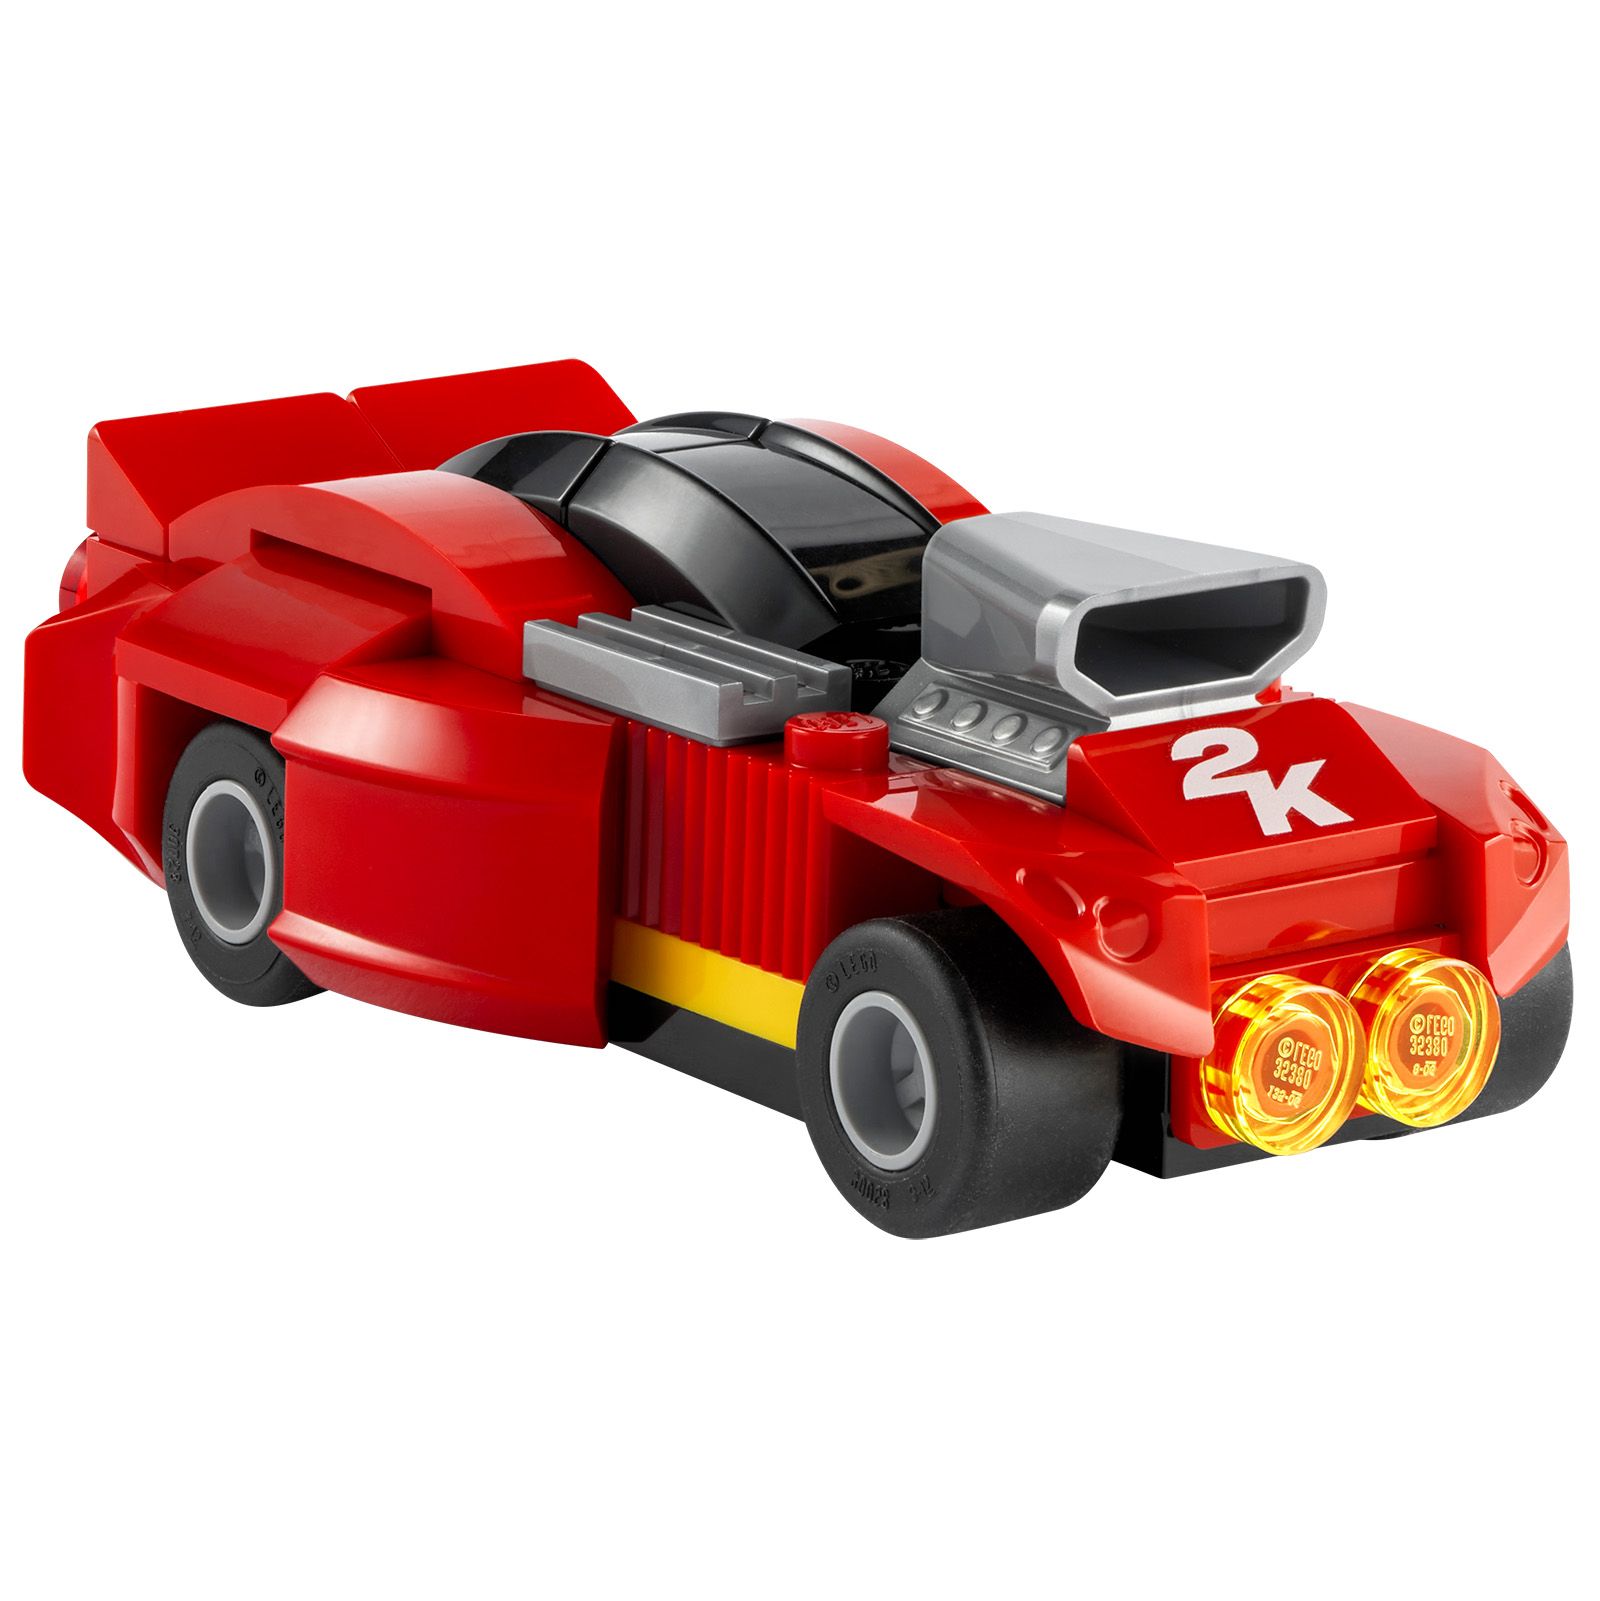 LEGO 2K Drive: en trailer og et LEGO-produkt som tilbys med visse fysiske versjoner av videospillet